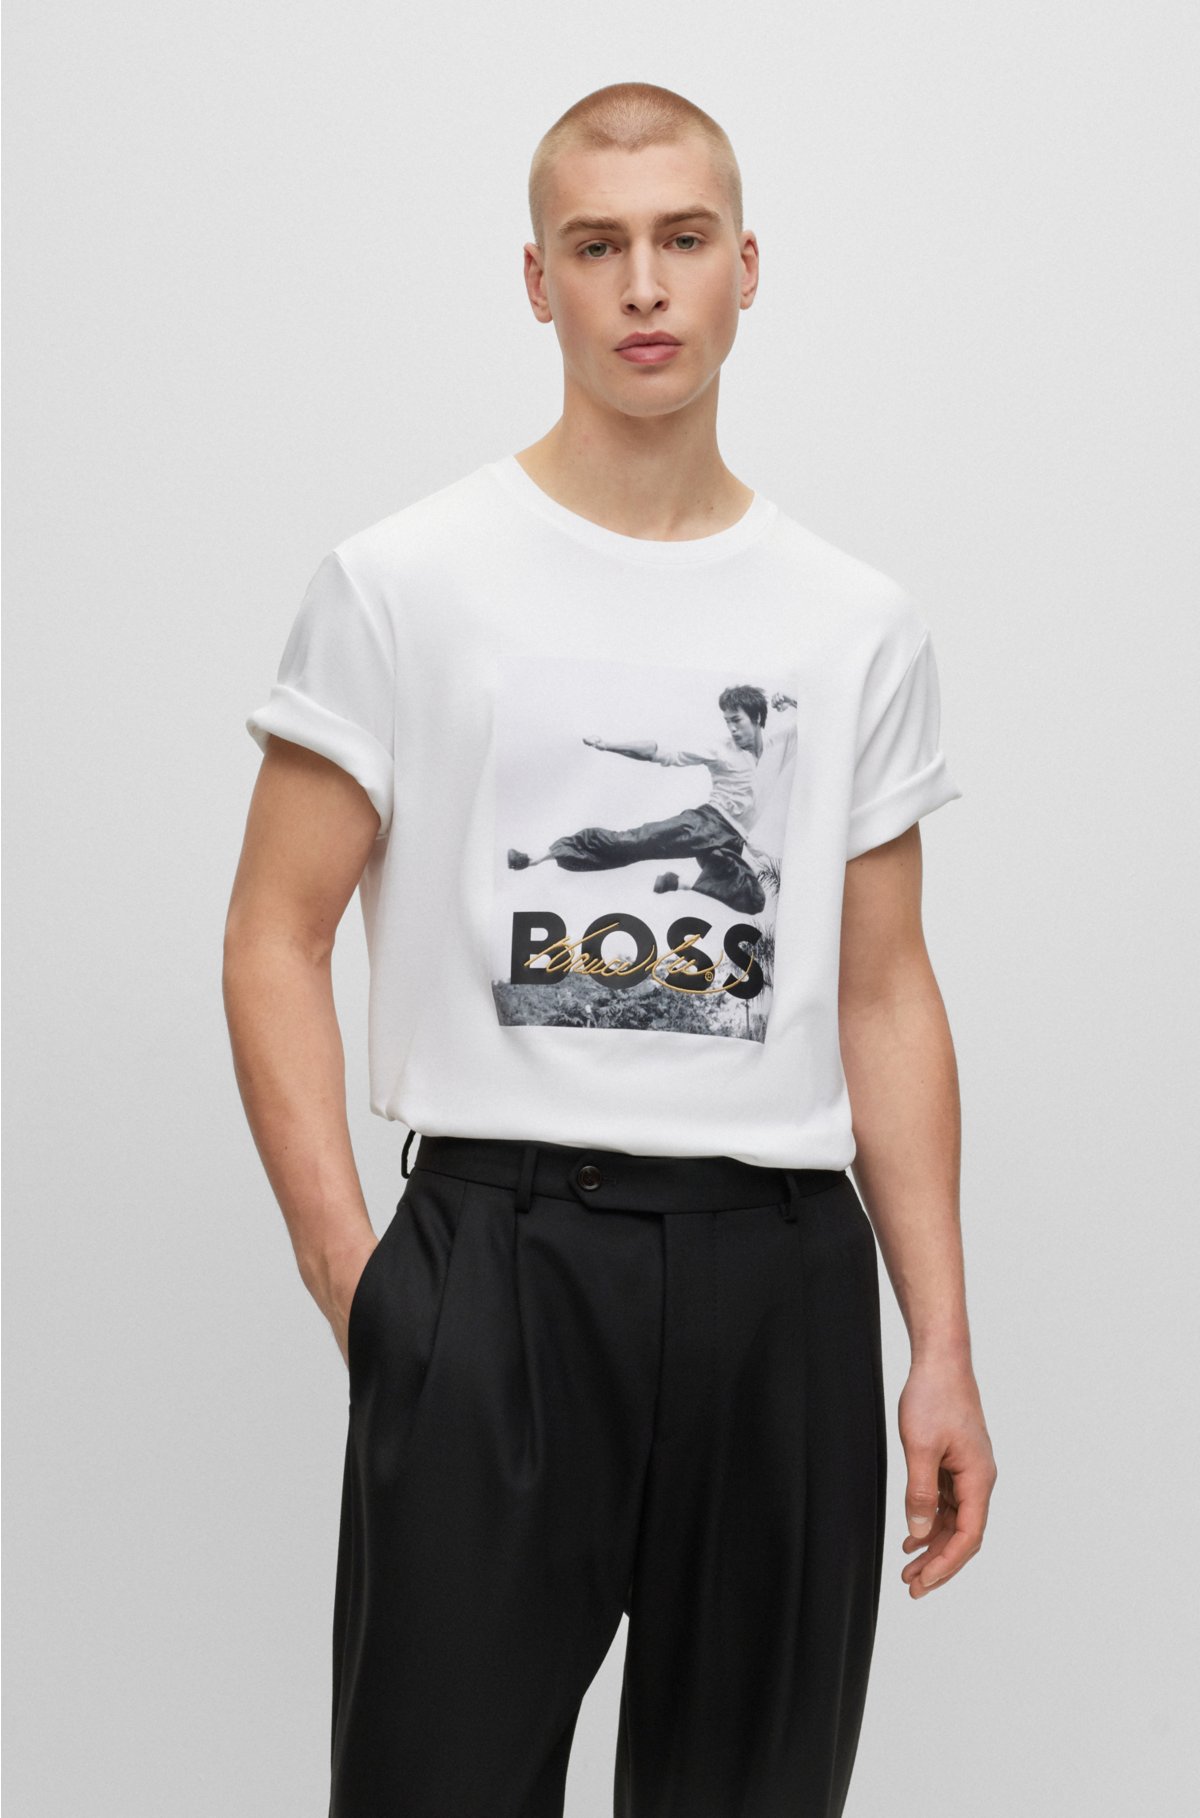 Middellandse Zee Polair Ritueel BOSS - BOSS x Bruce Lee genderneutraal T-shirt met foto-artwork